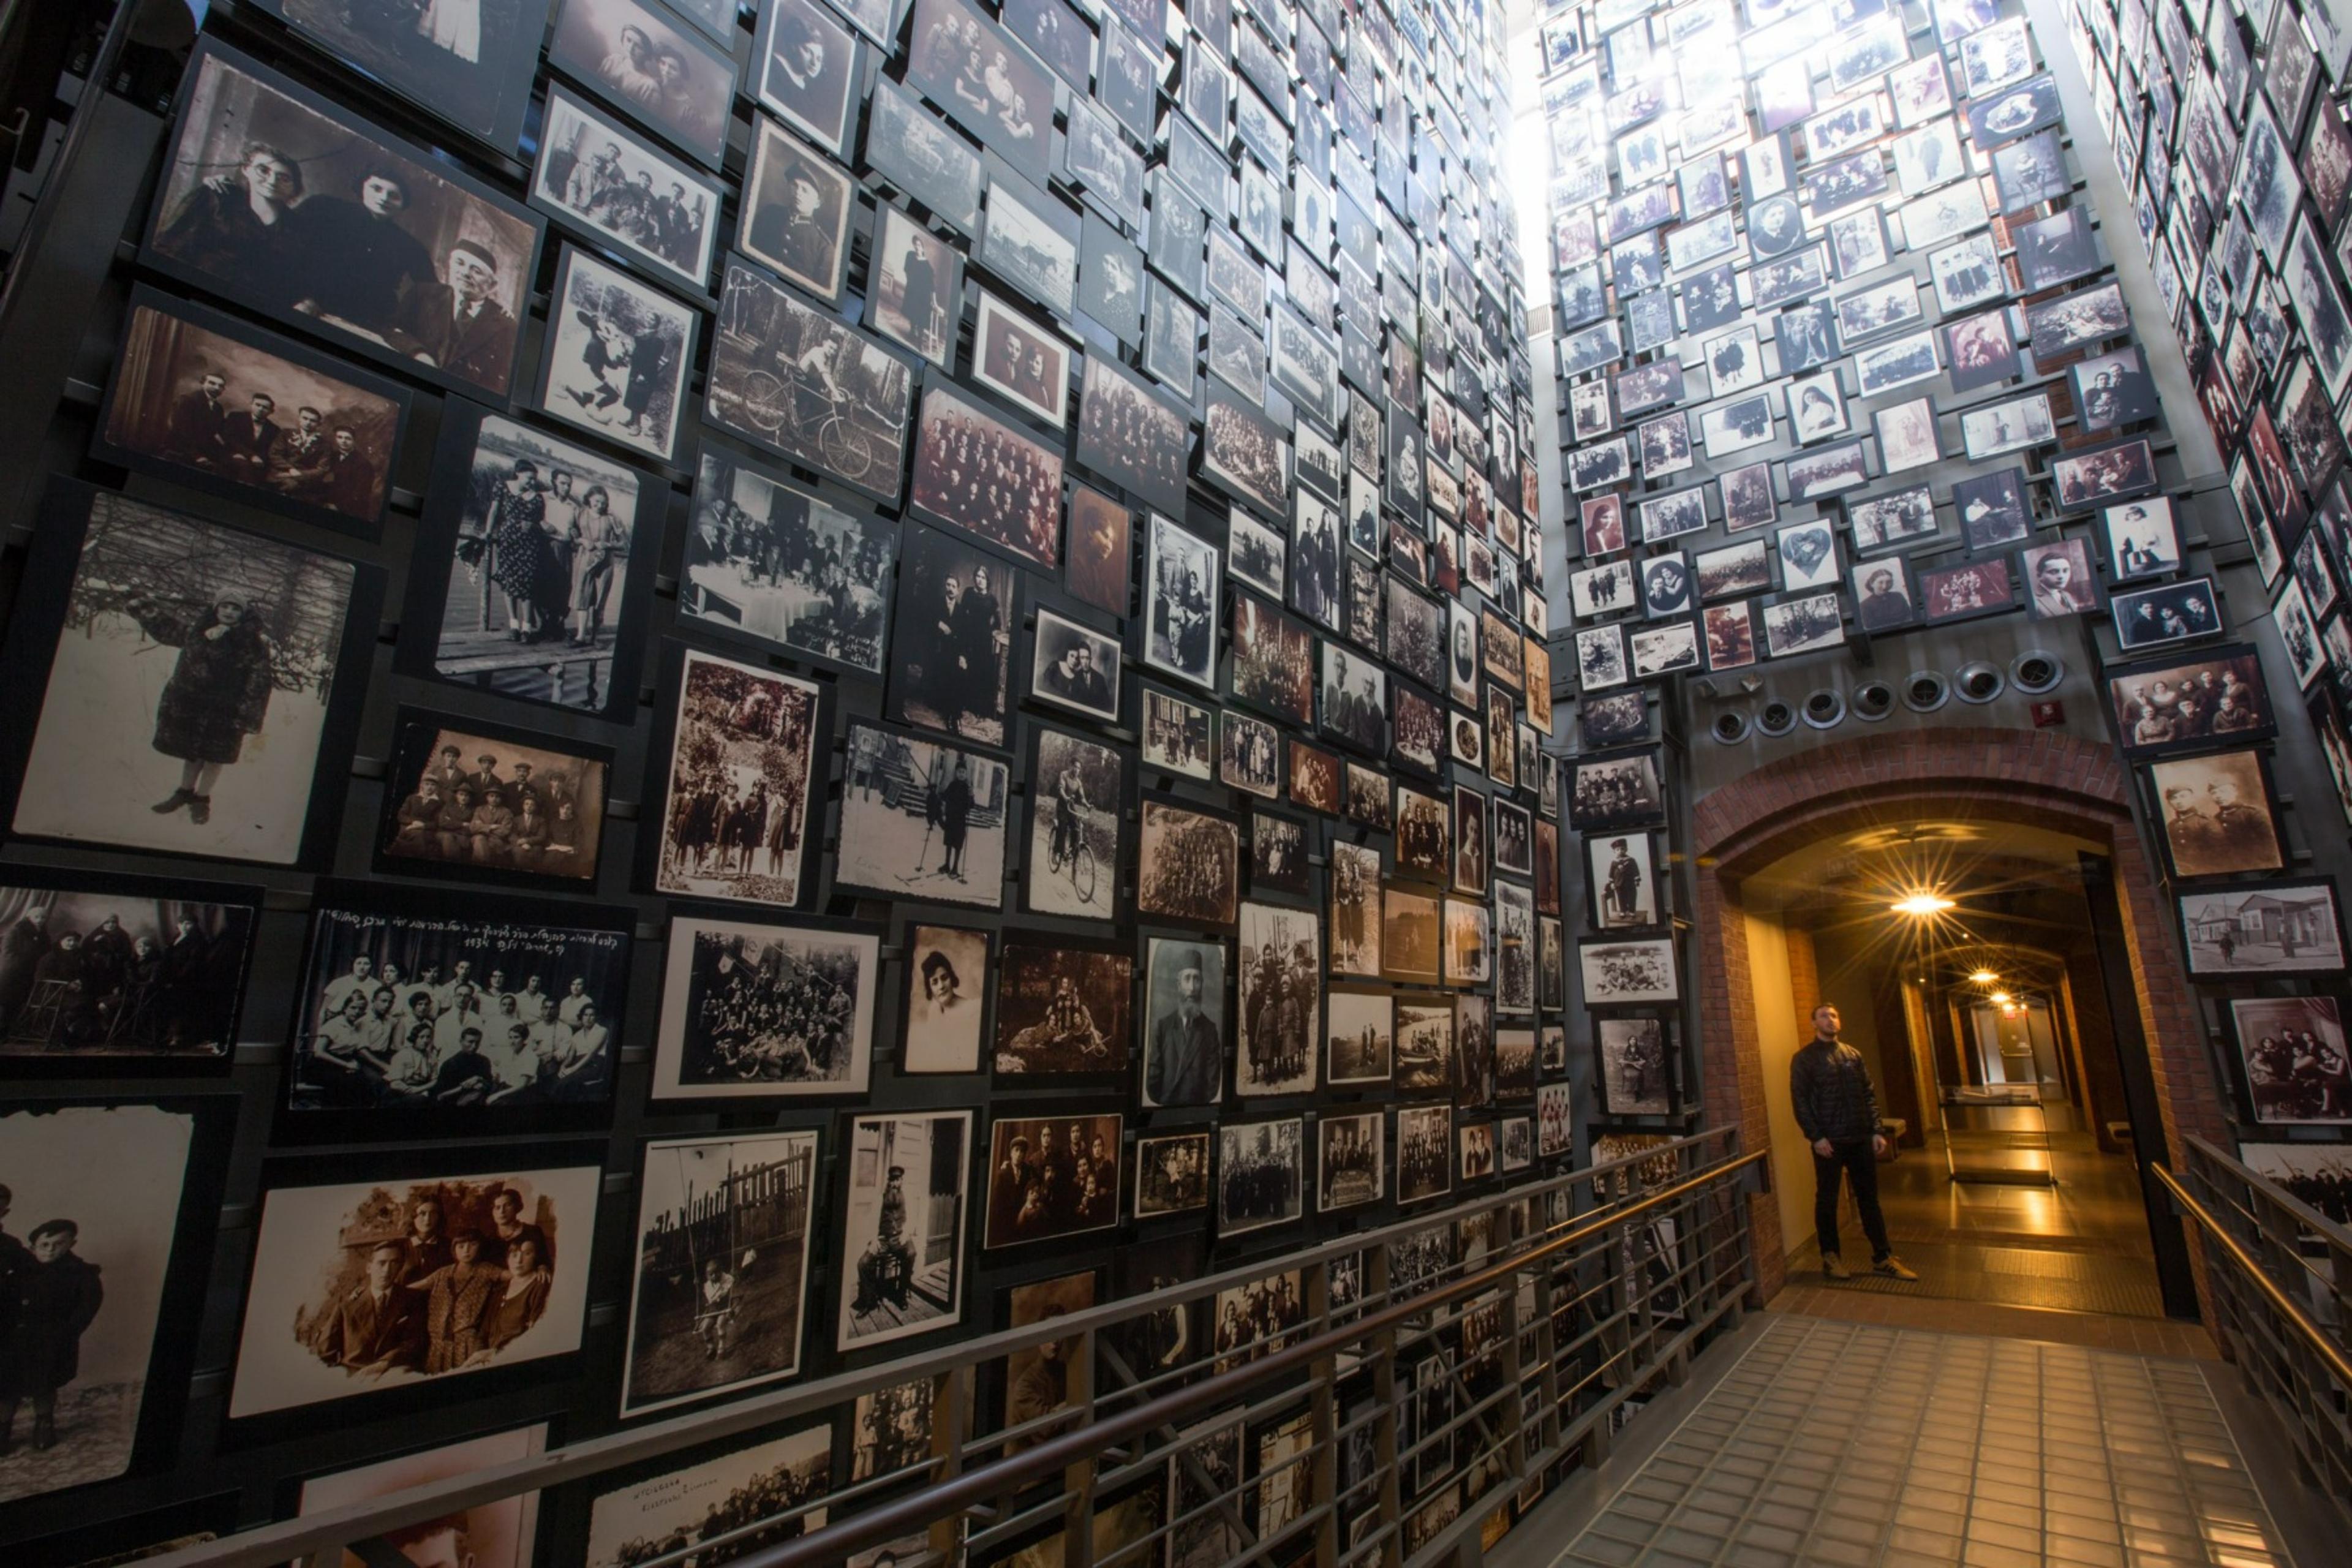 United States Holocaust Memorial Museum